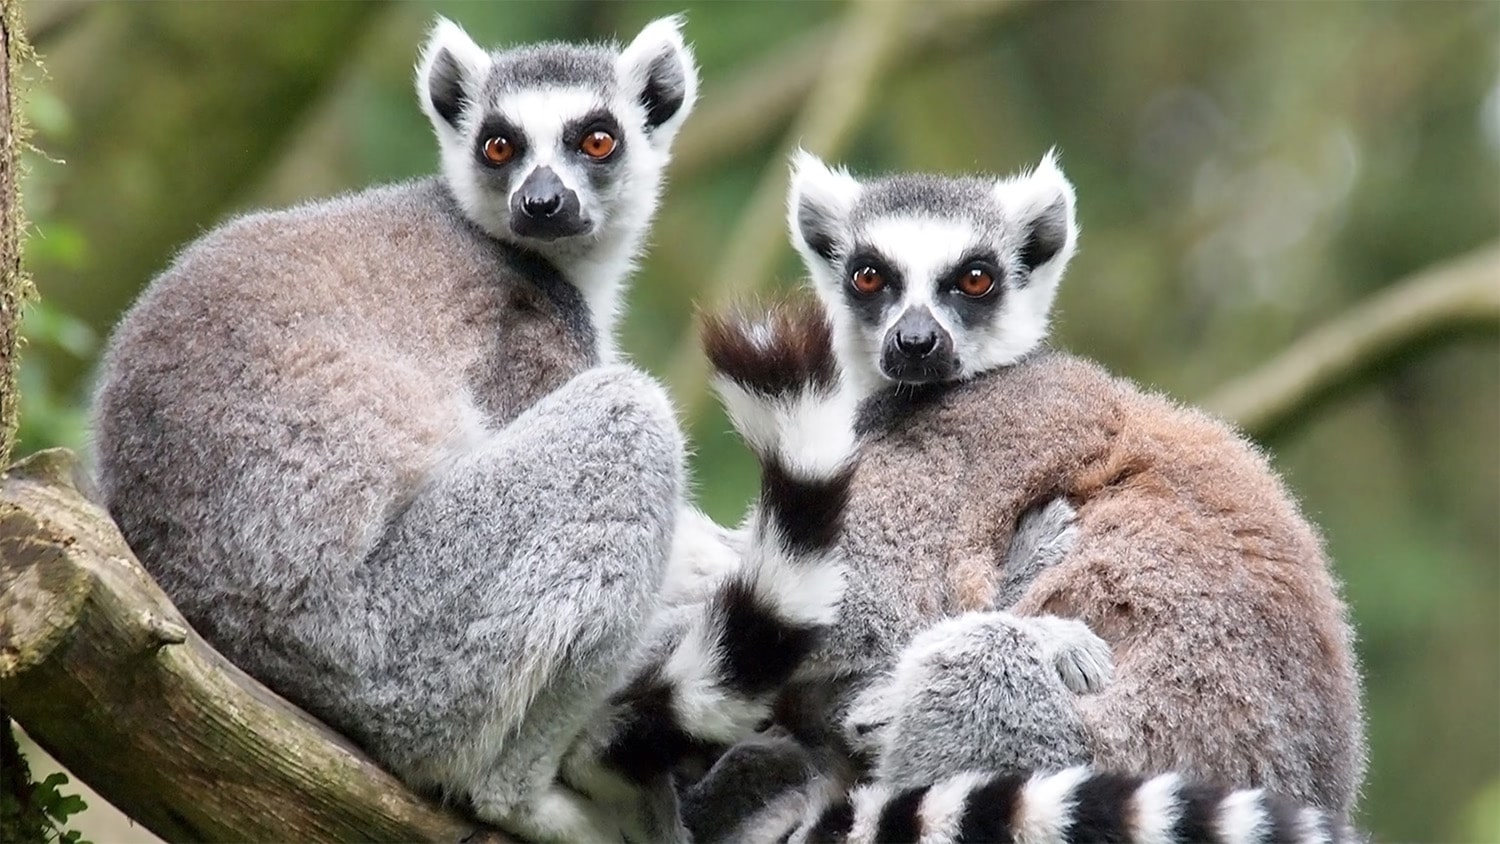 32 interesting facts about lemurs